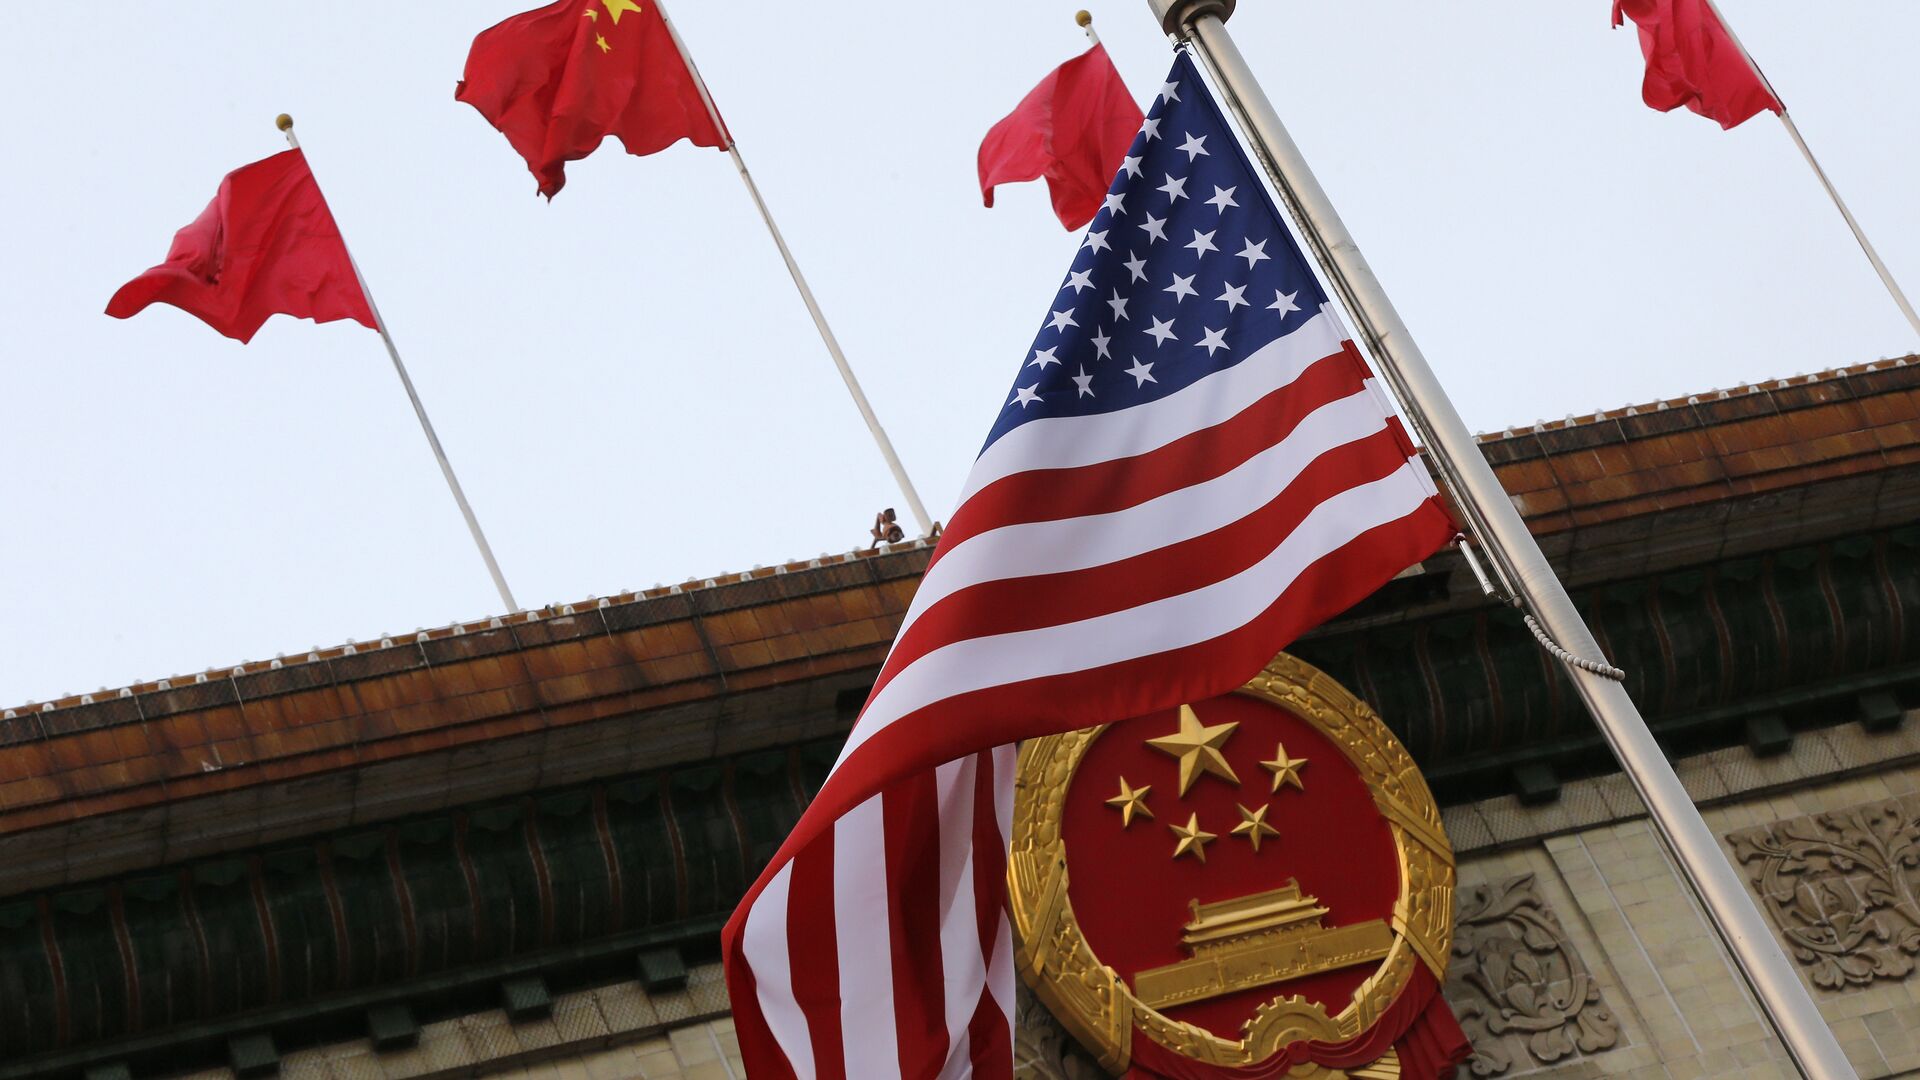 Флаги США и Китая во время визита Дональда Трампа в Пекин 9 ноября 2017 года - Sputnik Latvija, 1920, 02.06.2021